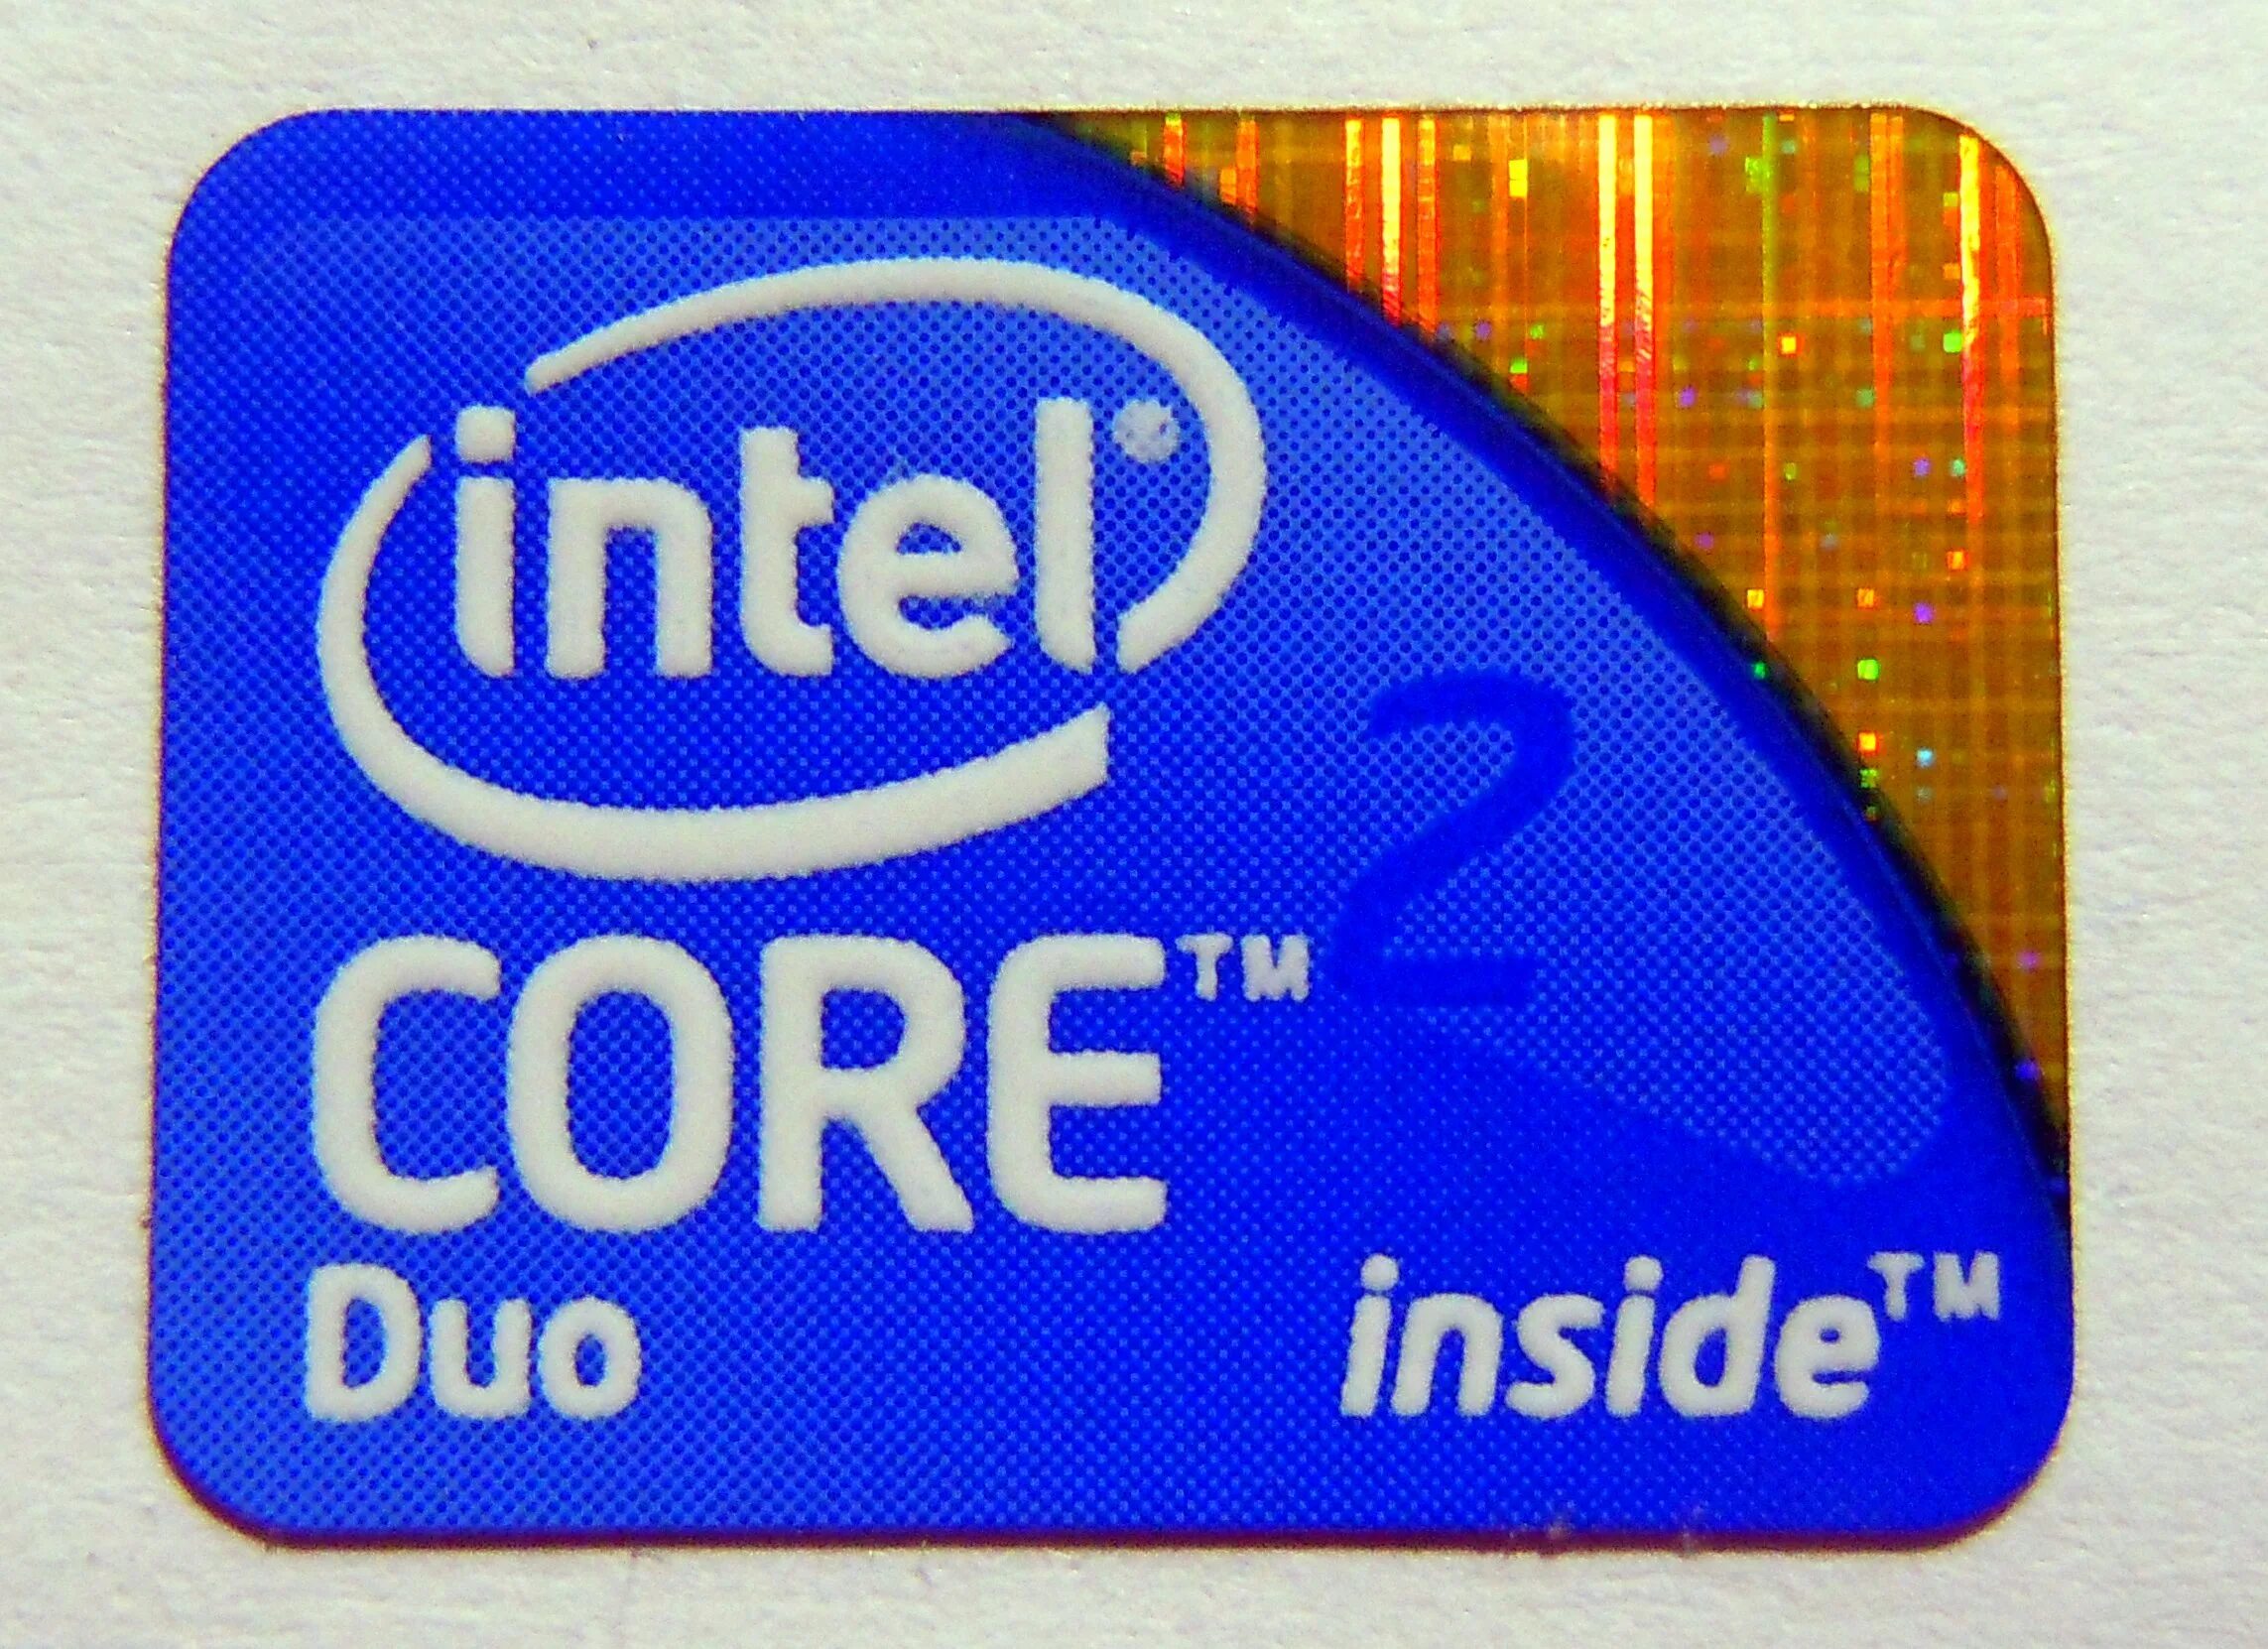 Процессор интел коре дуо. Наклейка Intel Core 2 Duo. Intel Core 2 Duo logo. Intel Core 2 Duo inside. Интел 2 дуо.